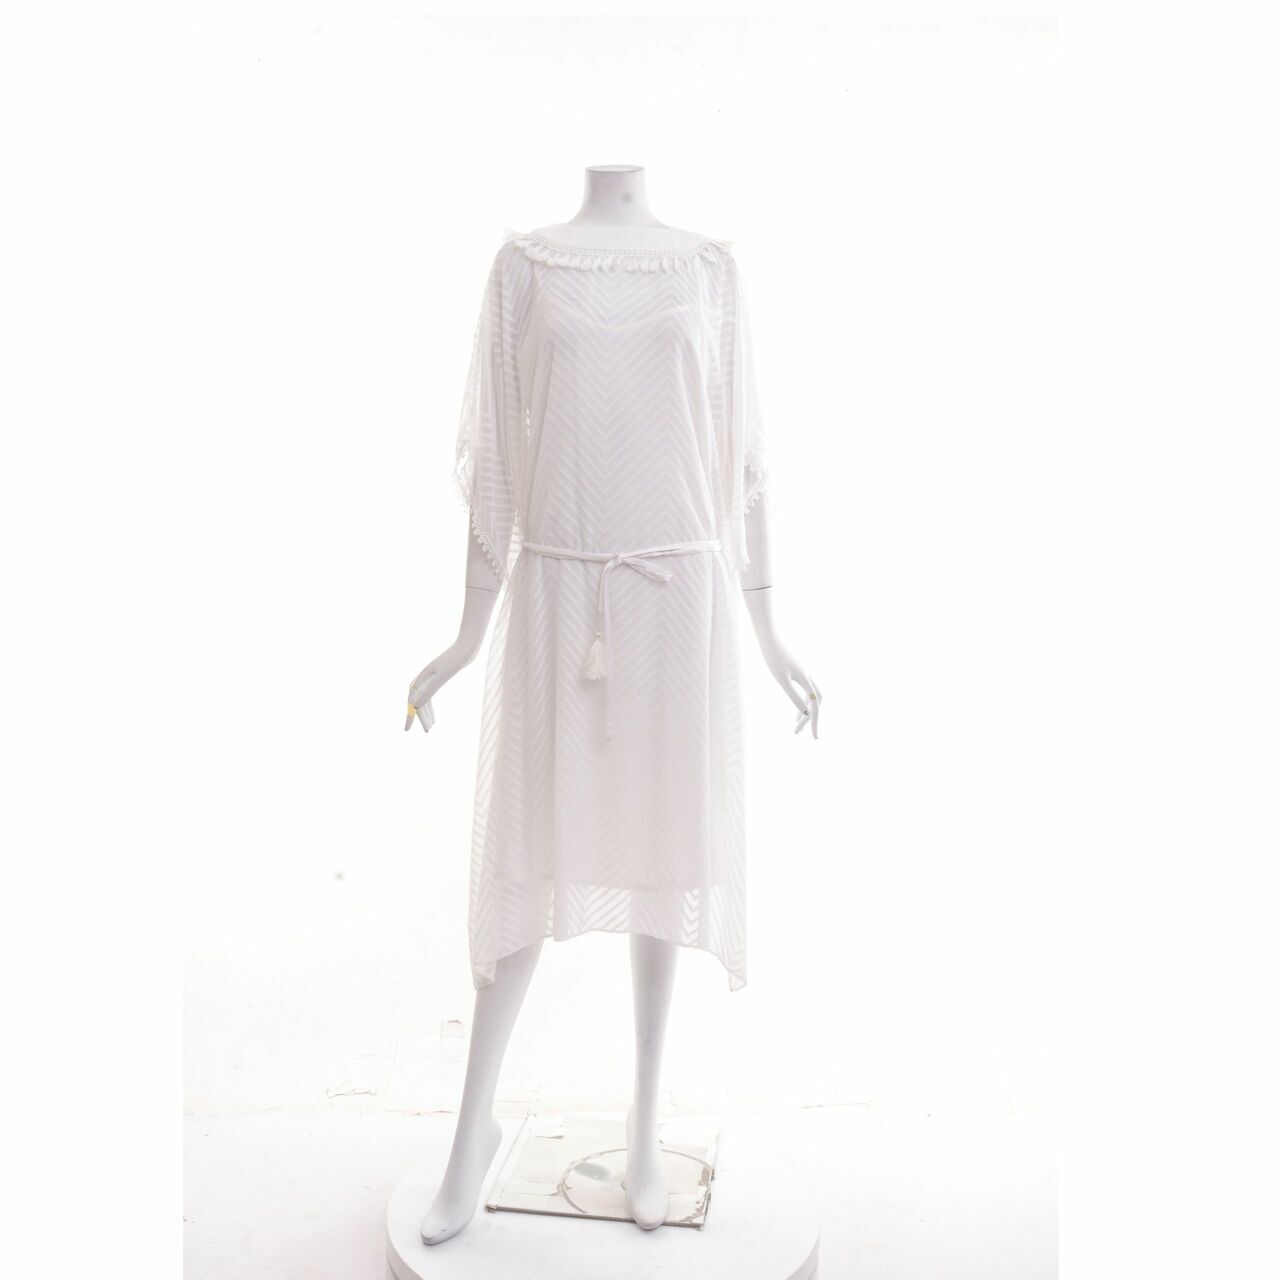 Reves Studio White Midi Dress